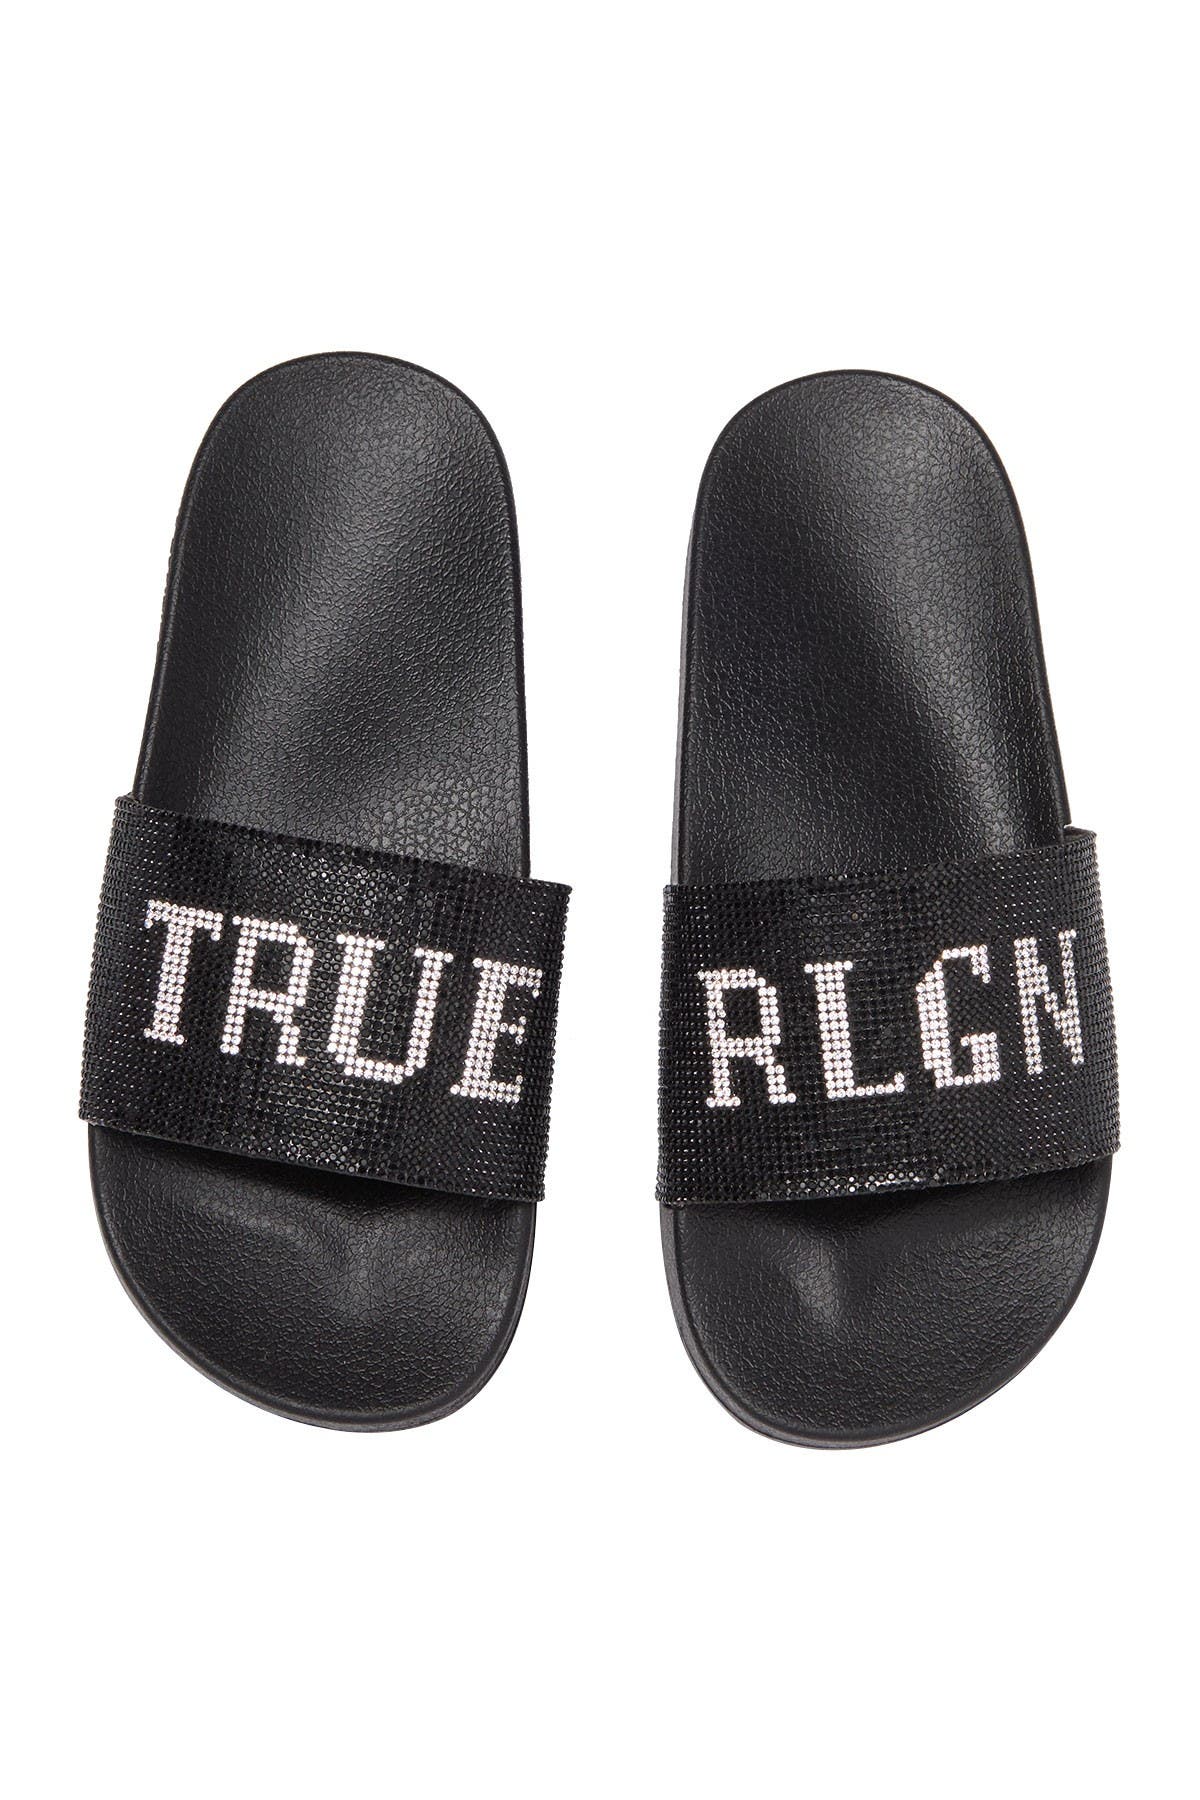 true religion sandals